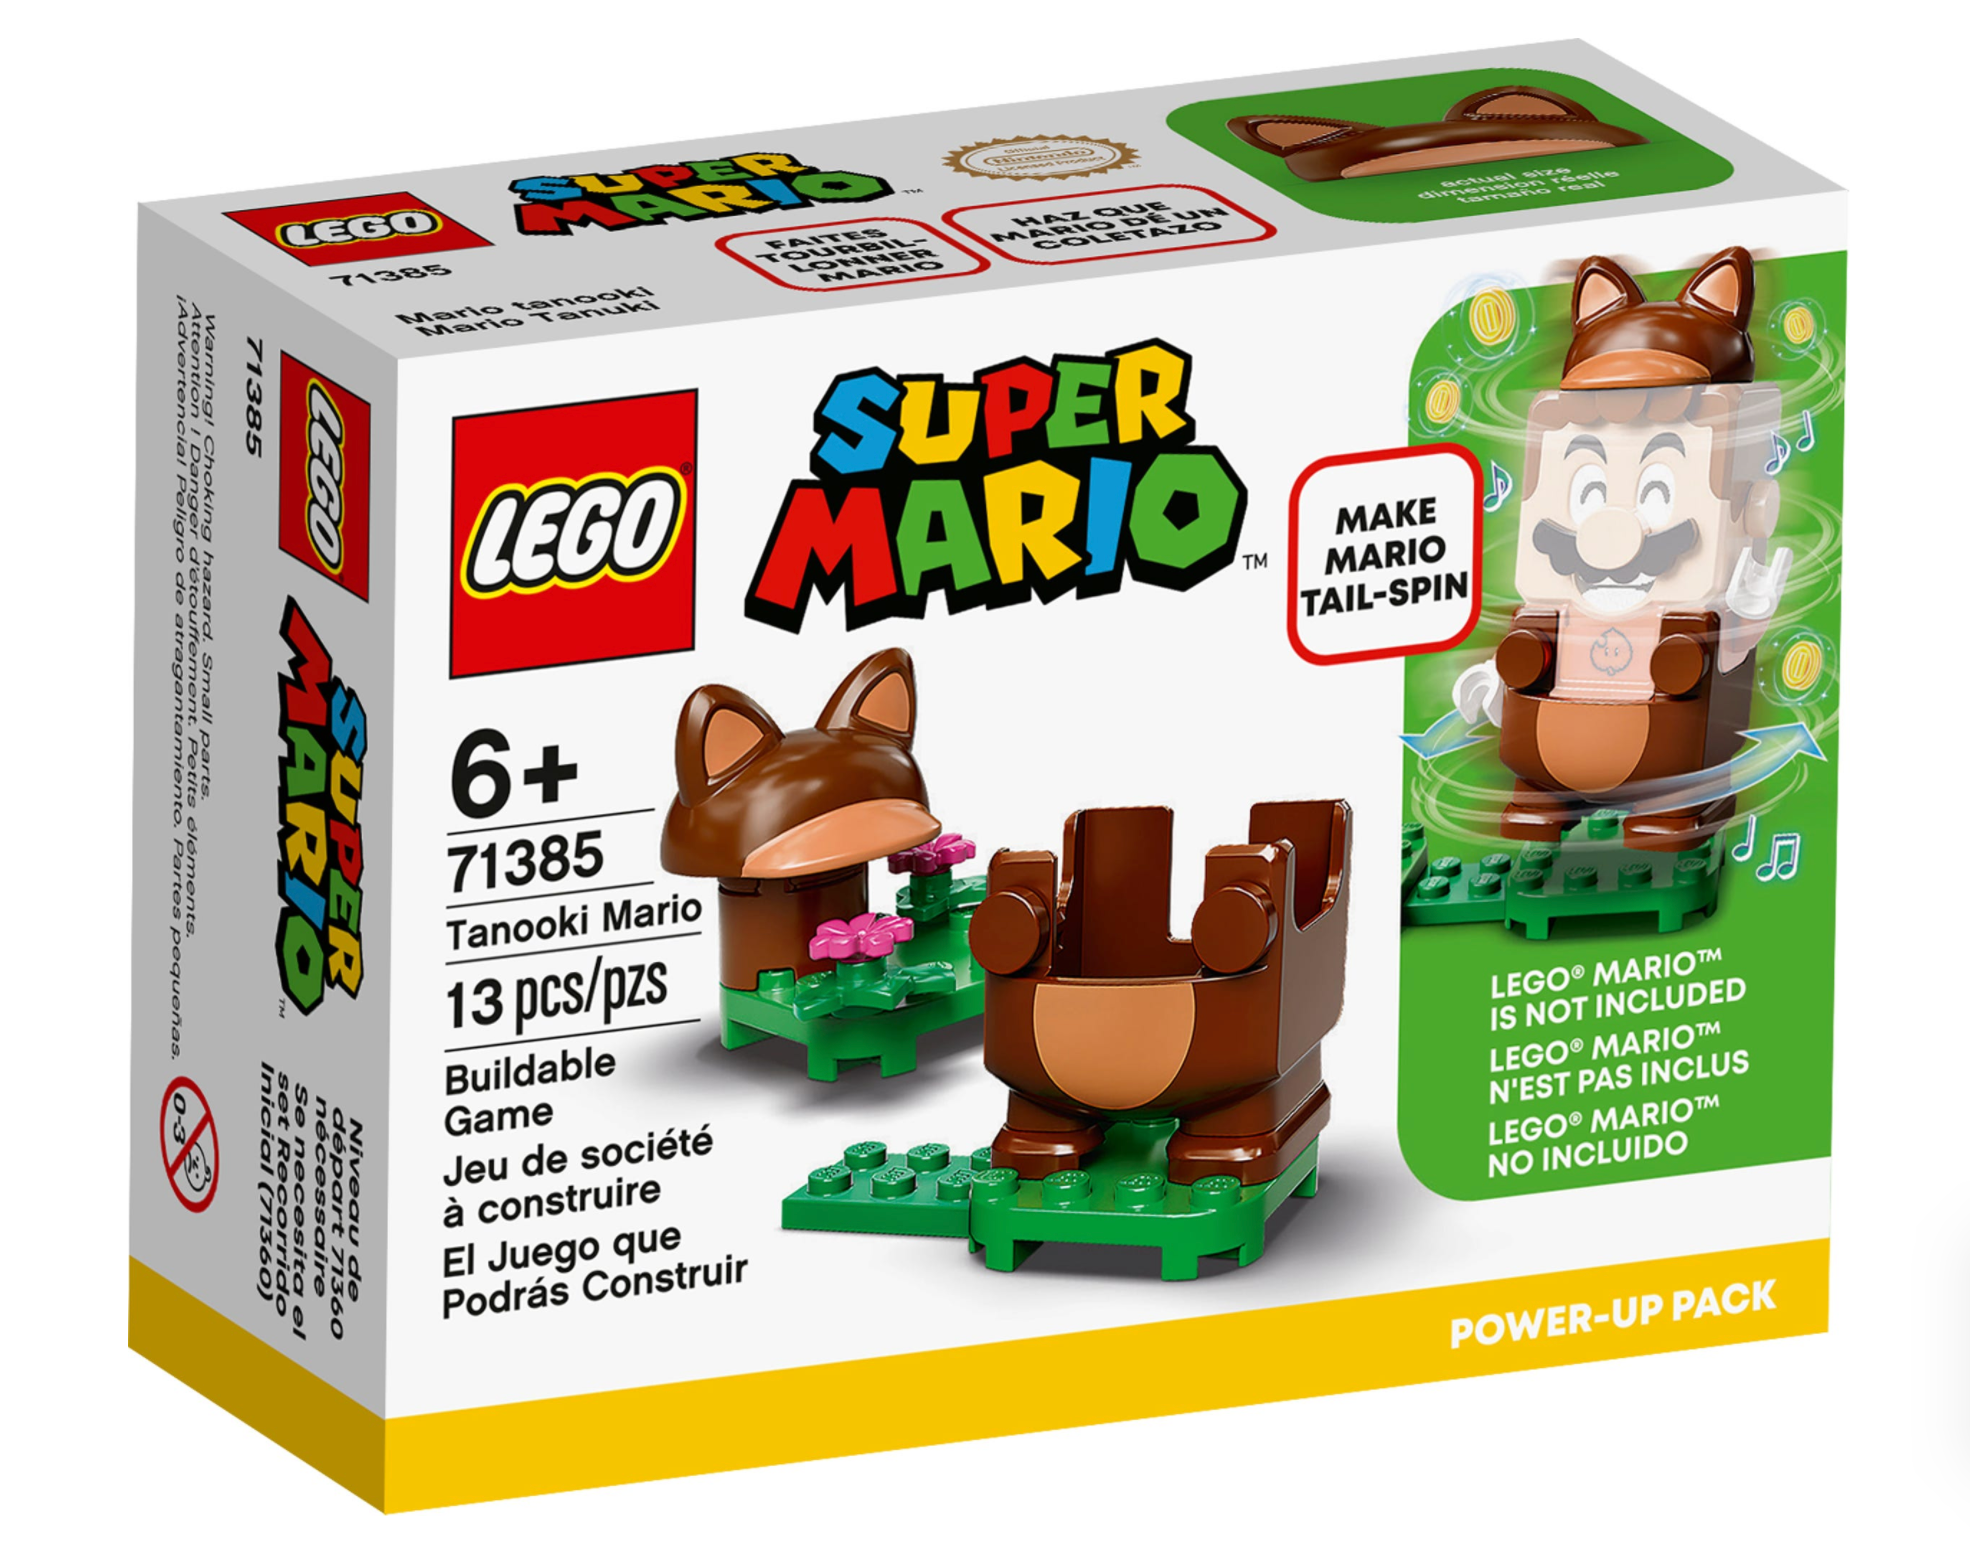 LEGO: Super Mario - Tanooki Mario Power-Up Pack